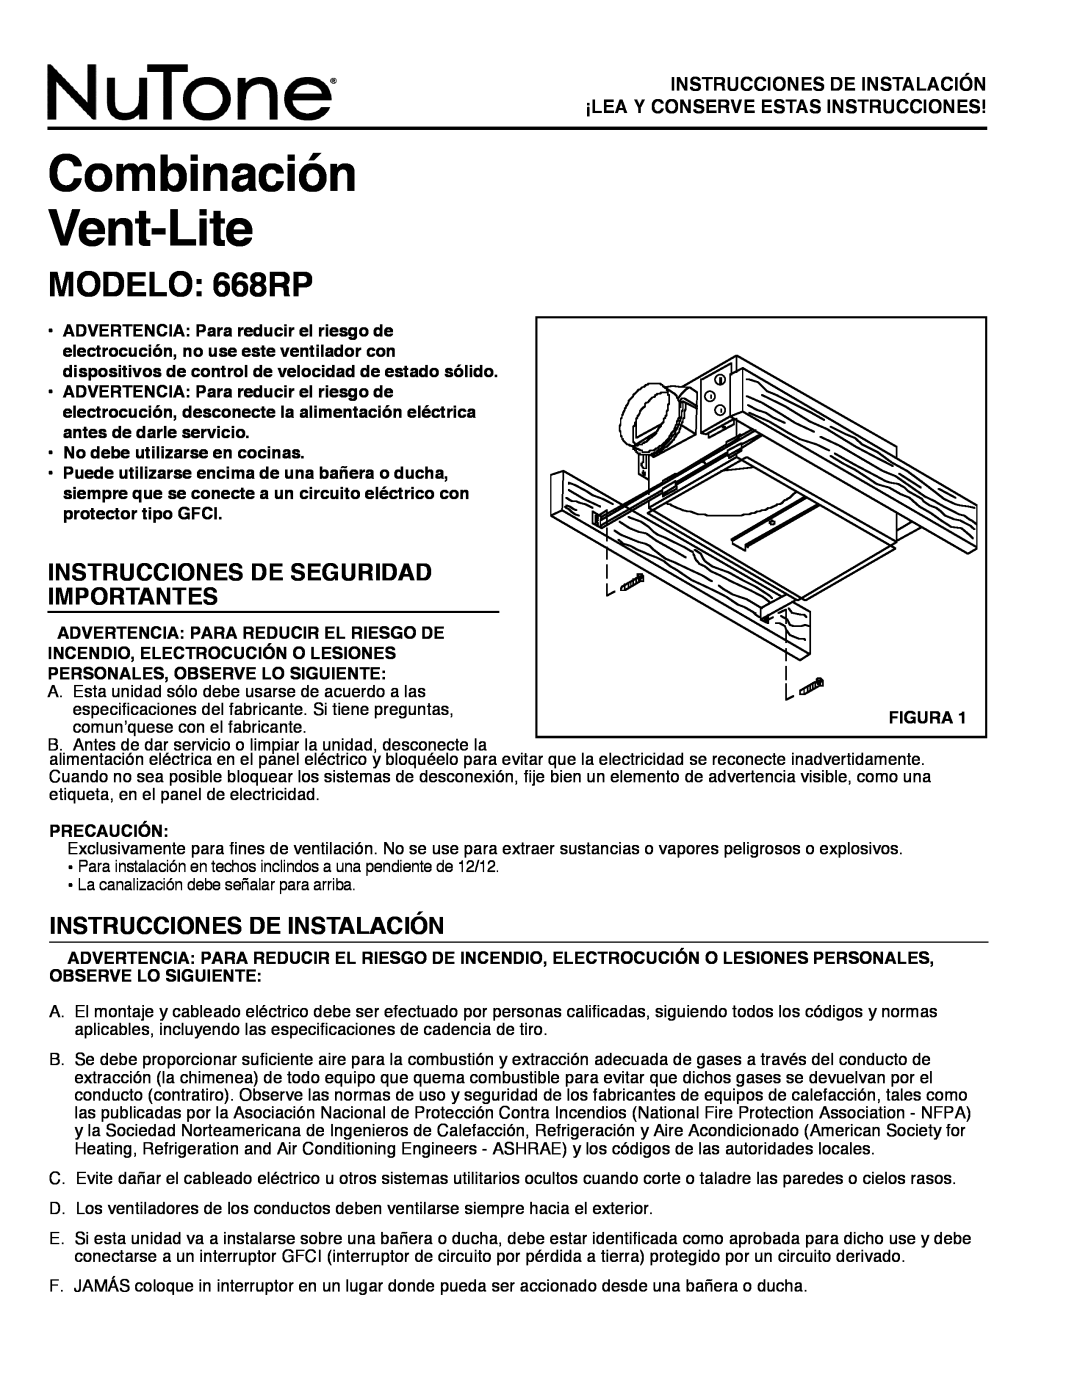 NuTone Combinación Vent-Lite, MODELO: 668RP, Instrucciones De Seguridad Importantes, Instrucciones De Instalación 